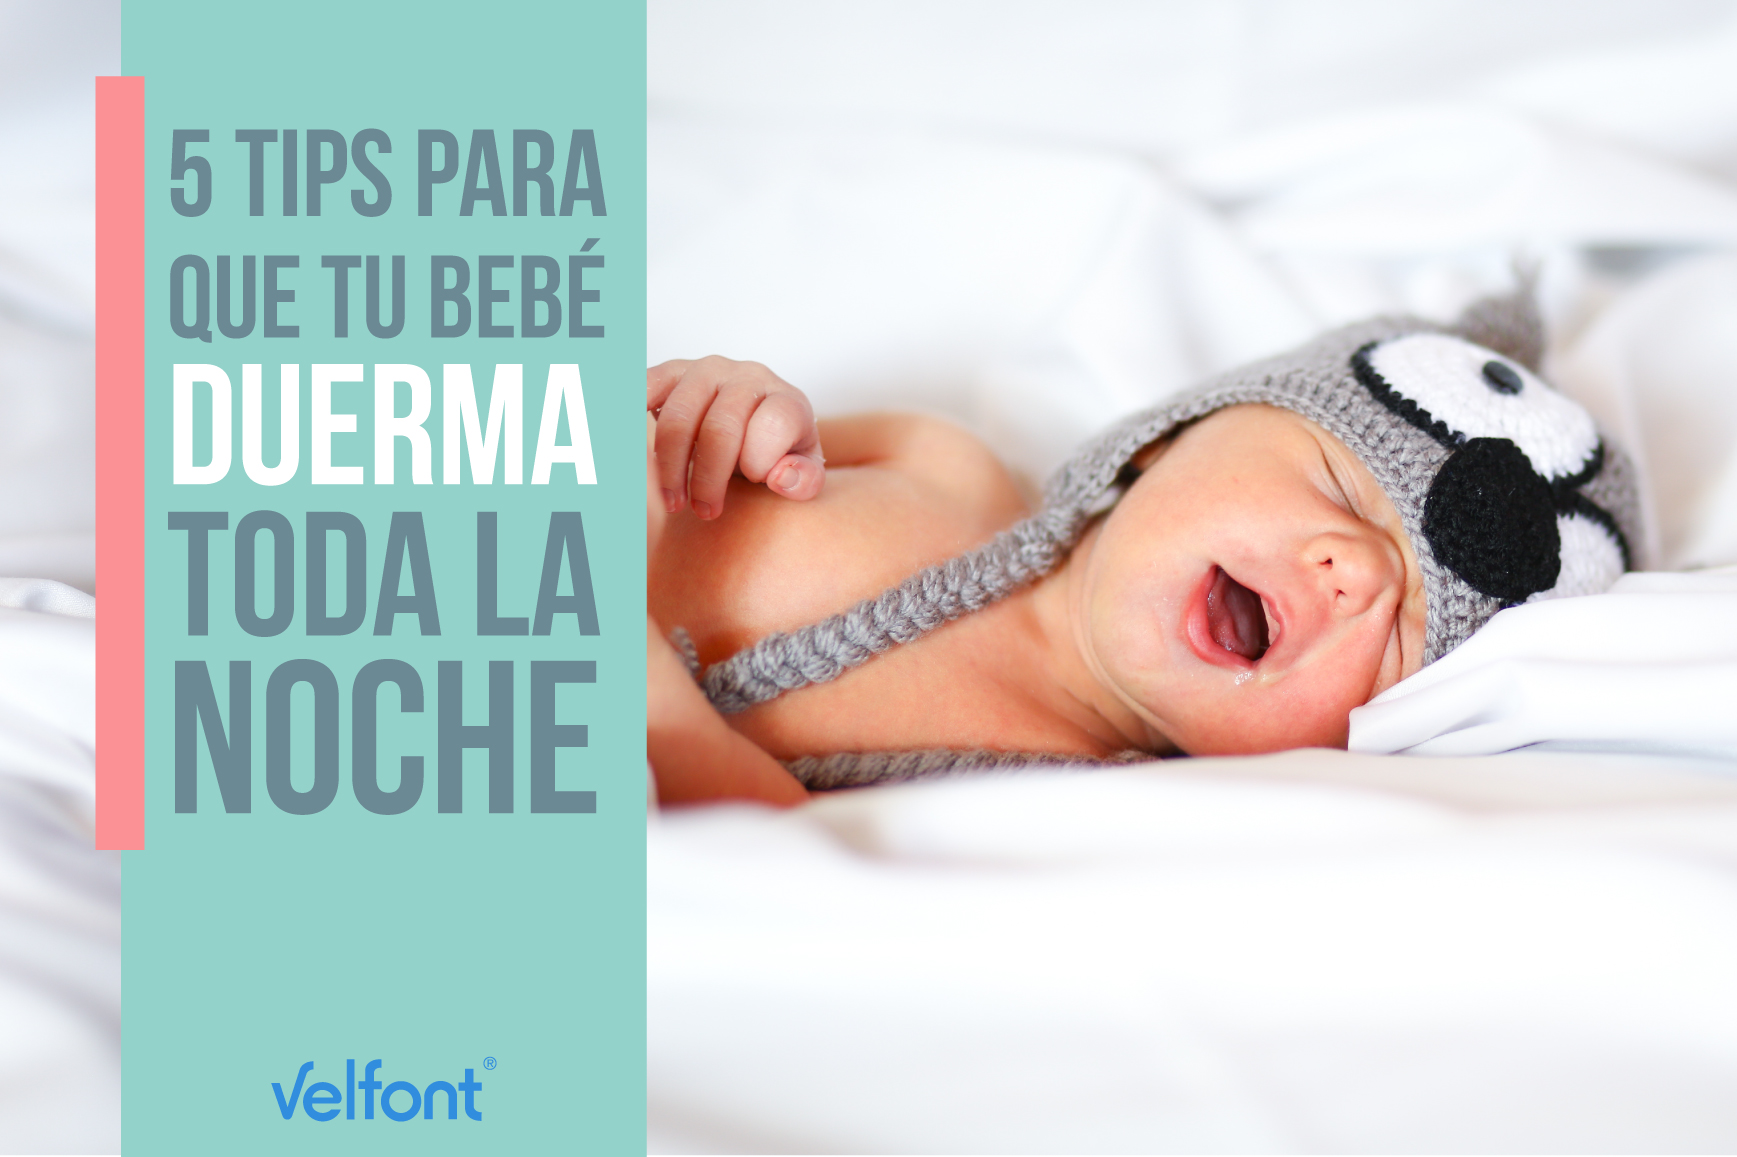 5 tips para que tu bebé duerma toda la noche